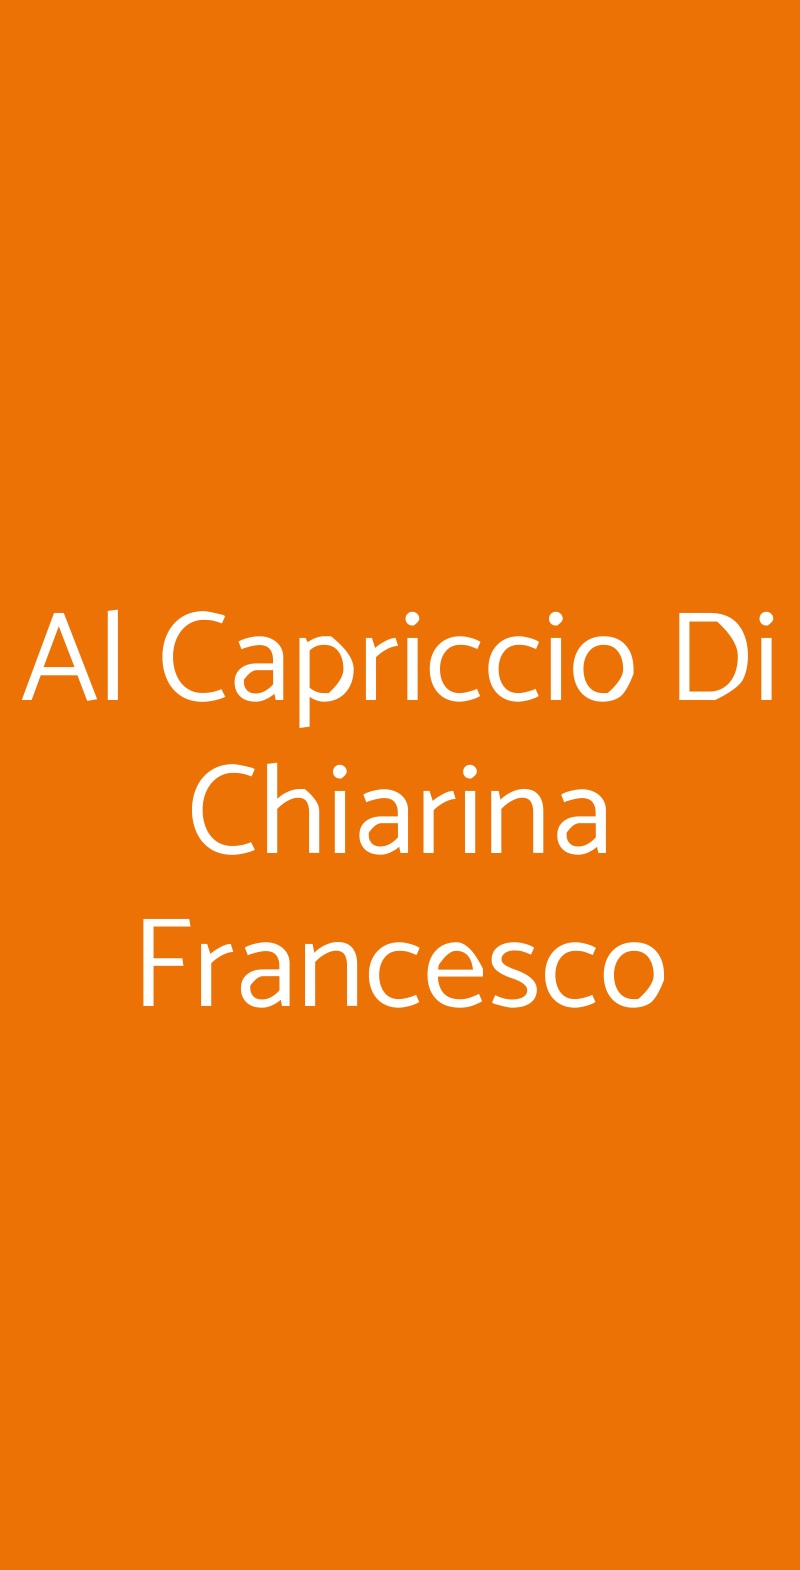 Al Capriccio Di Chiarina Francesco Catania menù 1 pagina